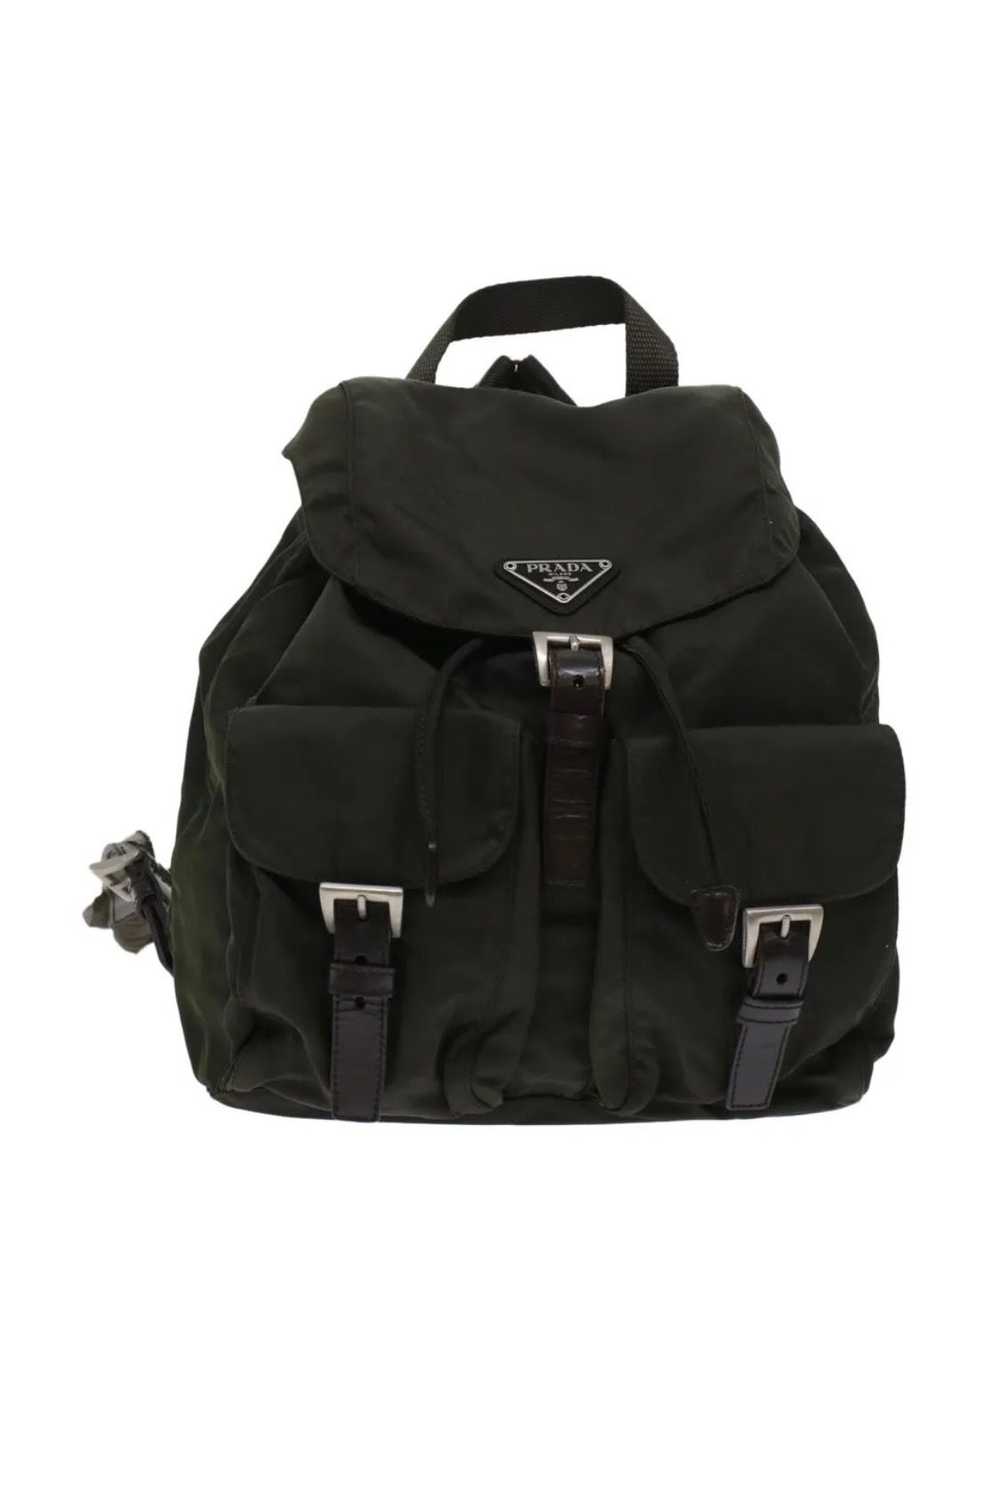 Prada Prada Backpack - image 1